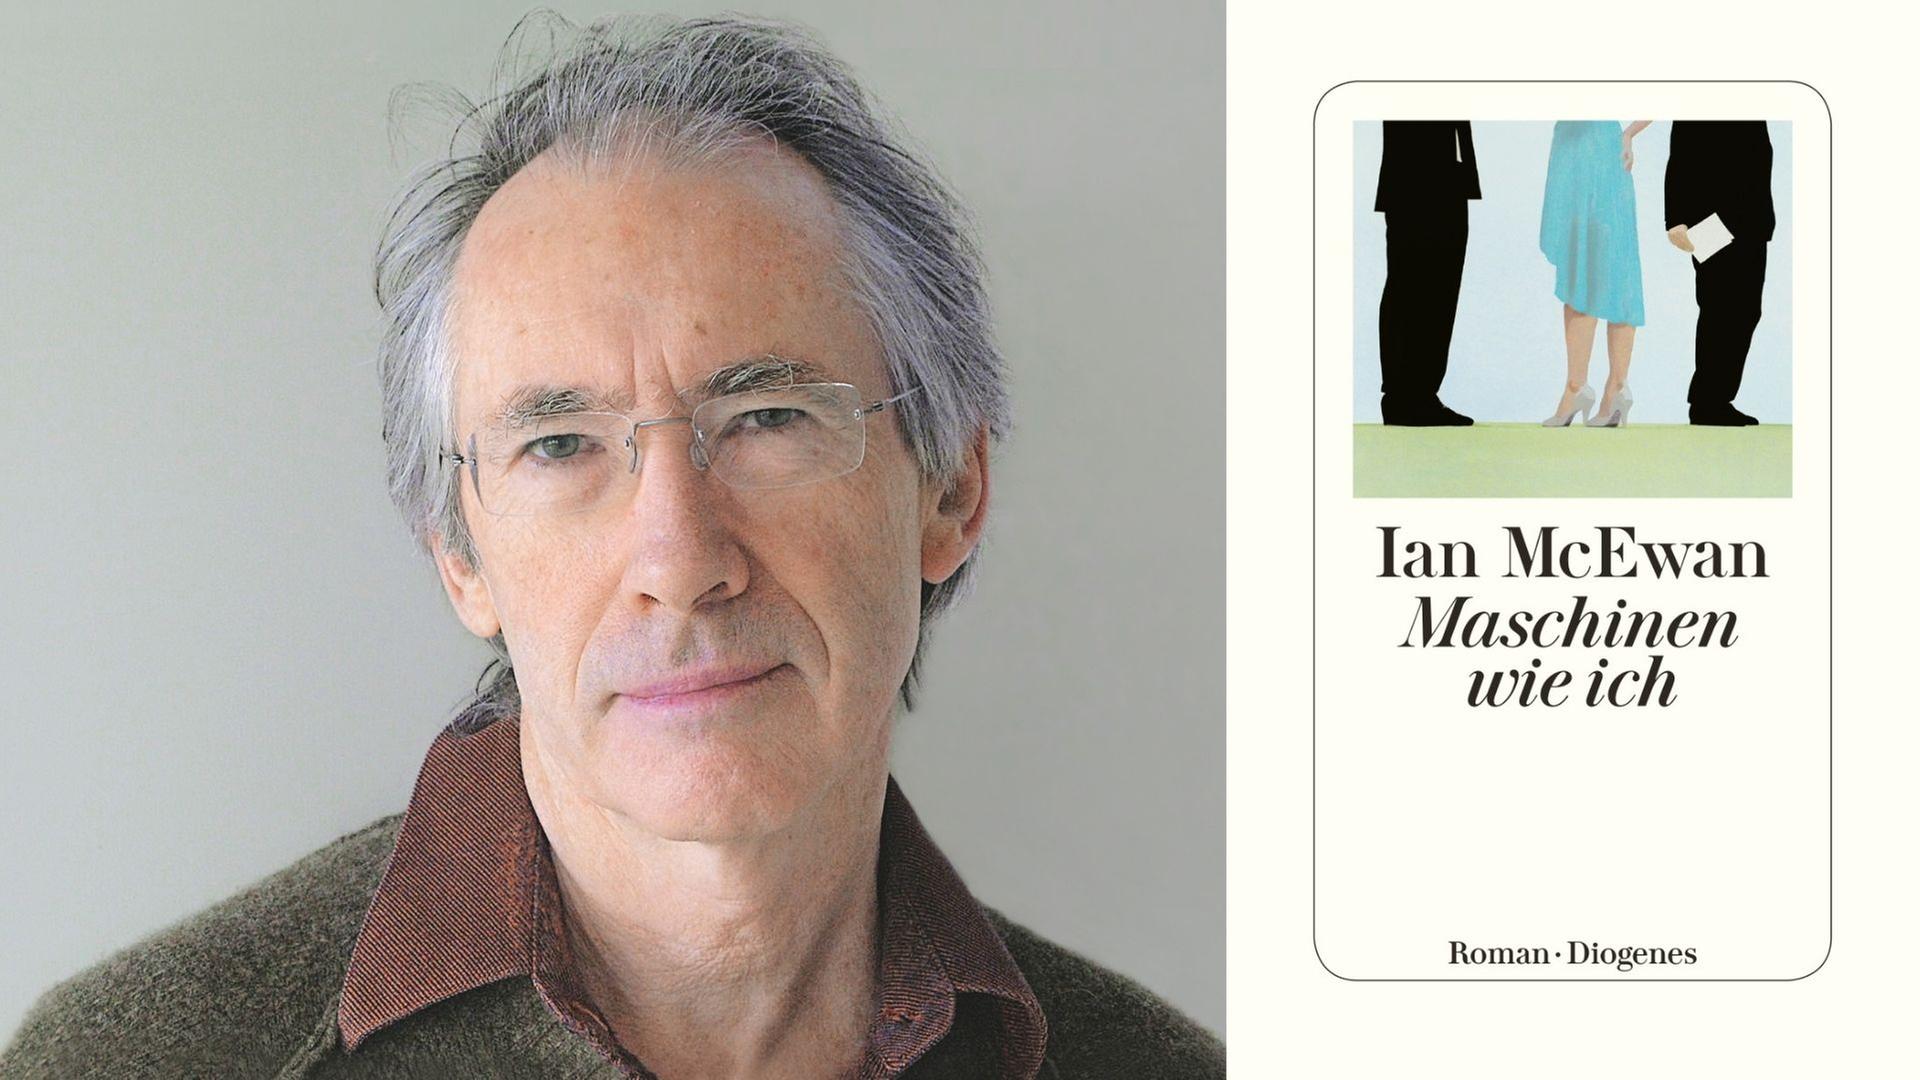 Zu sehen ist der Autor Ian McEwan und das Cover seines Romans "Maschinen wie ich".